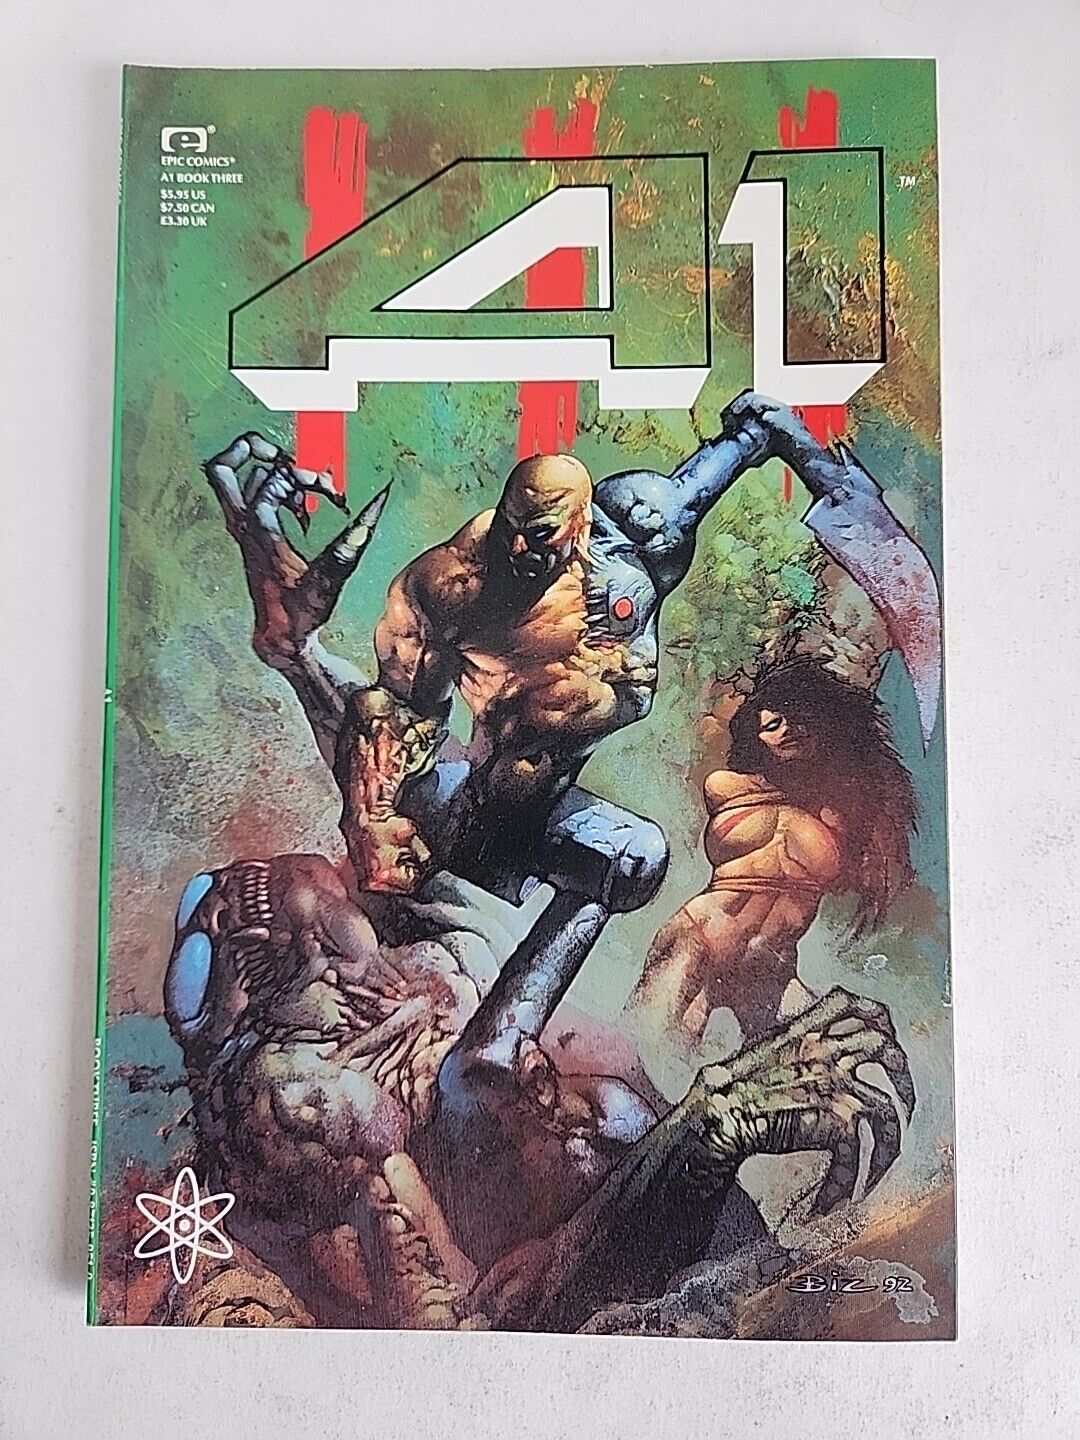 A1 Book Three Vol. 3 Atomeka Epic Comics Simon Bisley Cover Unread 1992